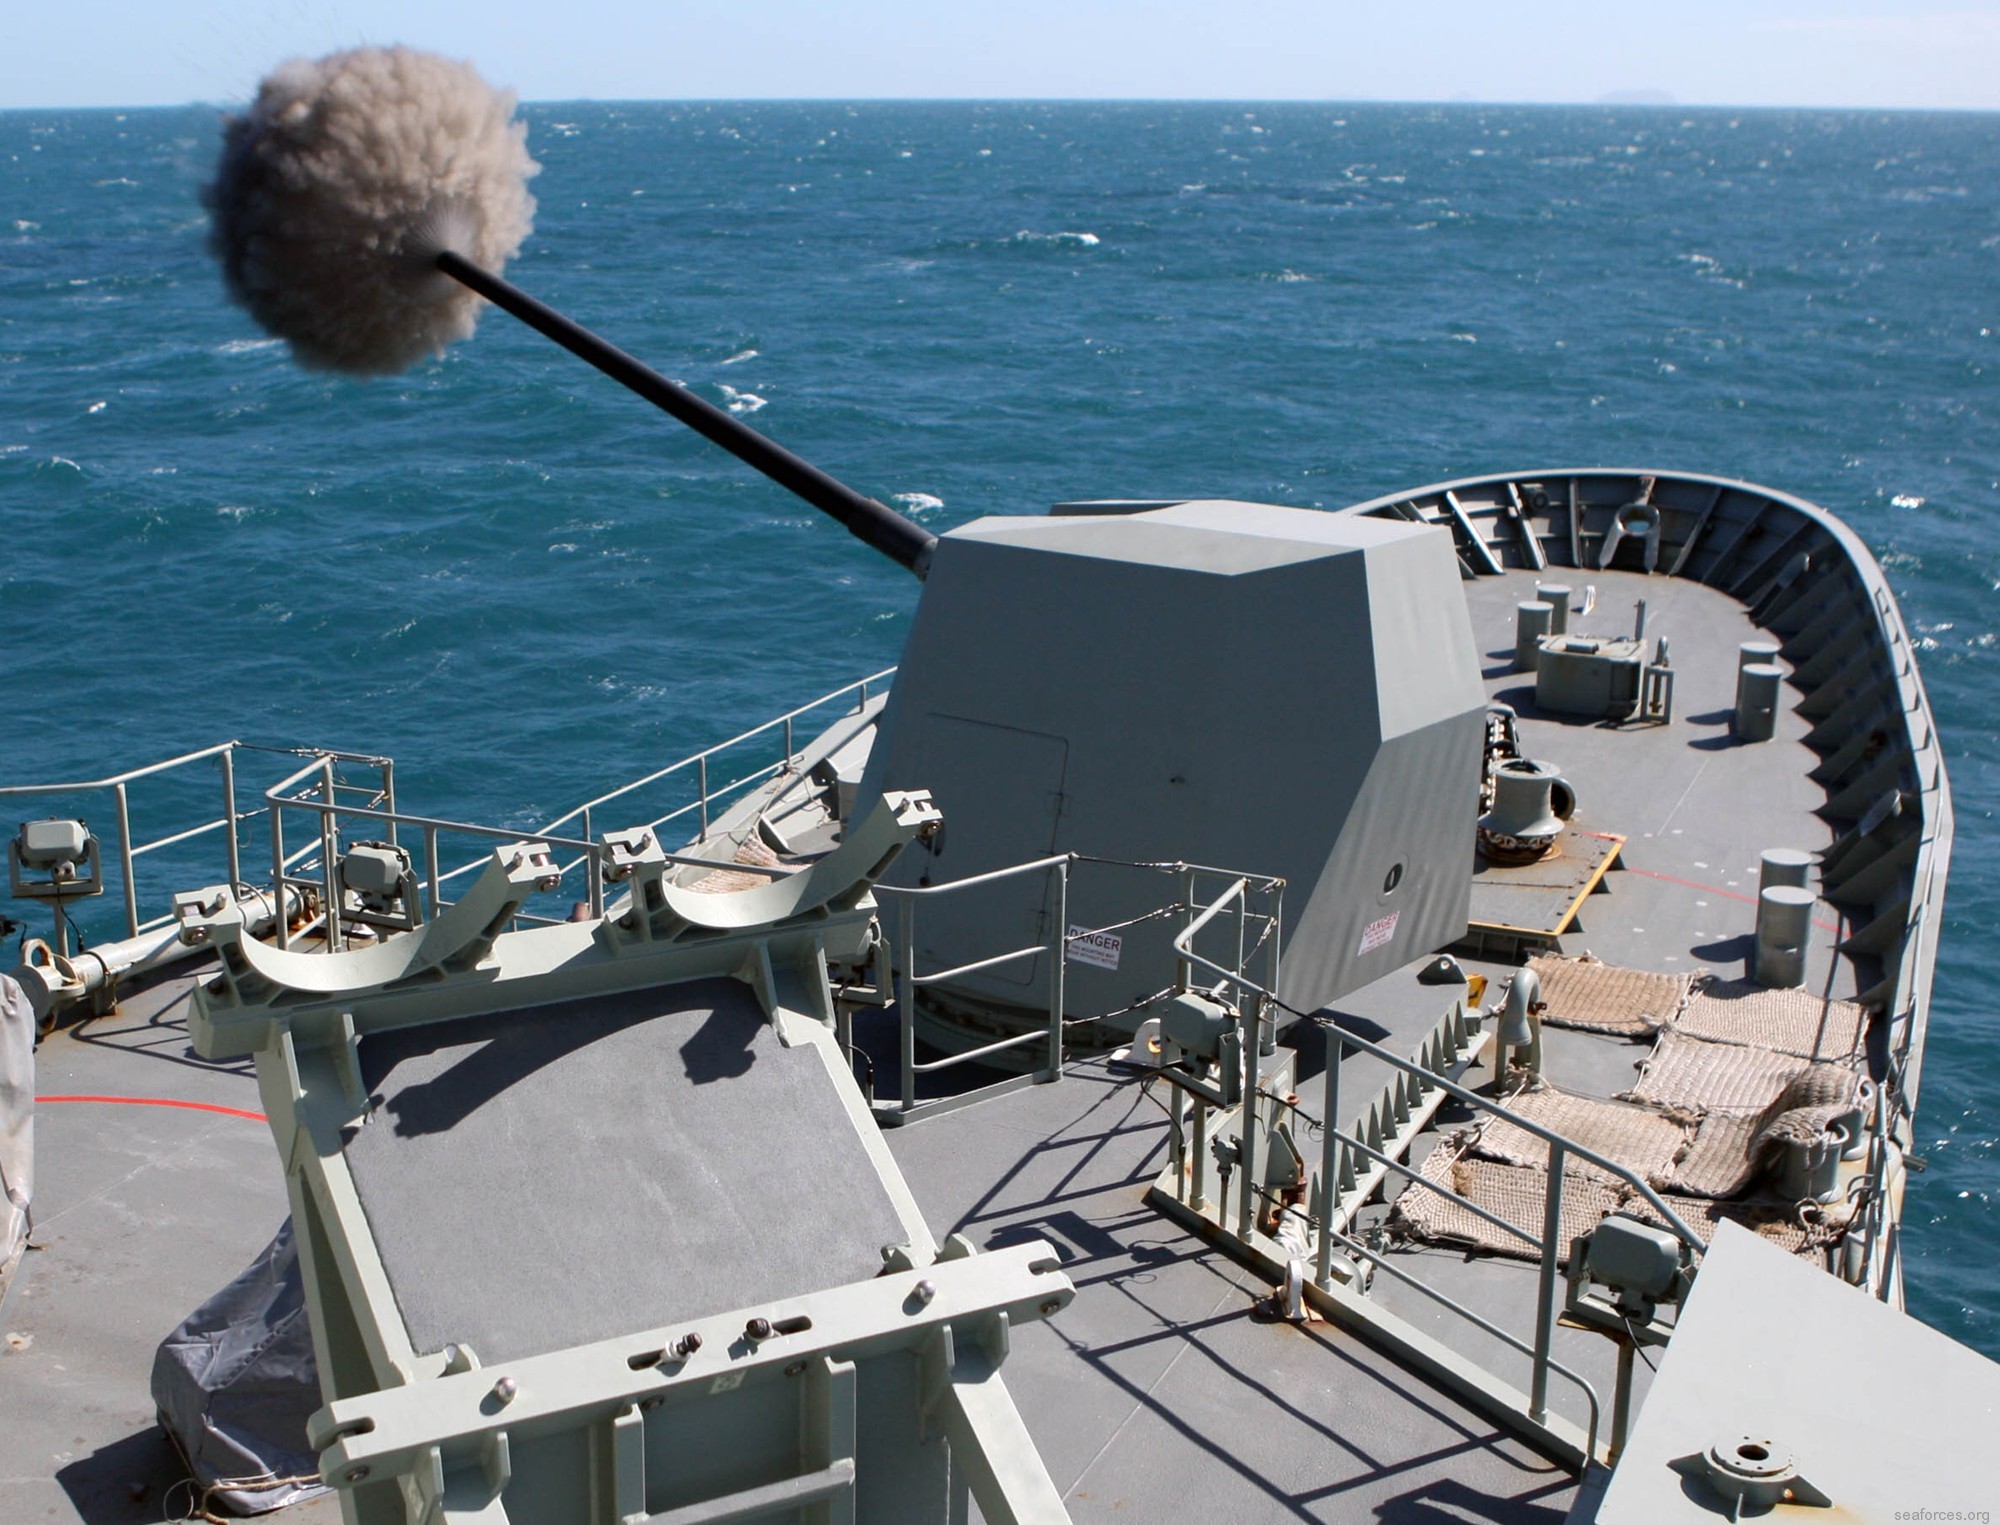 ffh-155 hms ballarat anzac class frigate royal australian navy 2011 36 mk-45 5" 54 caliber gun fire